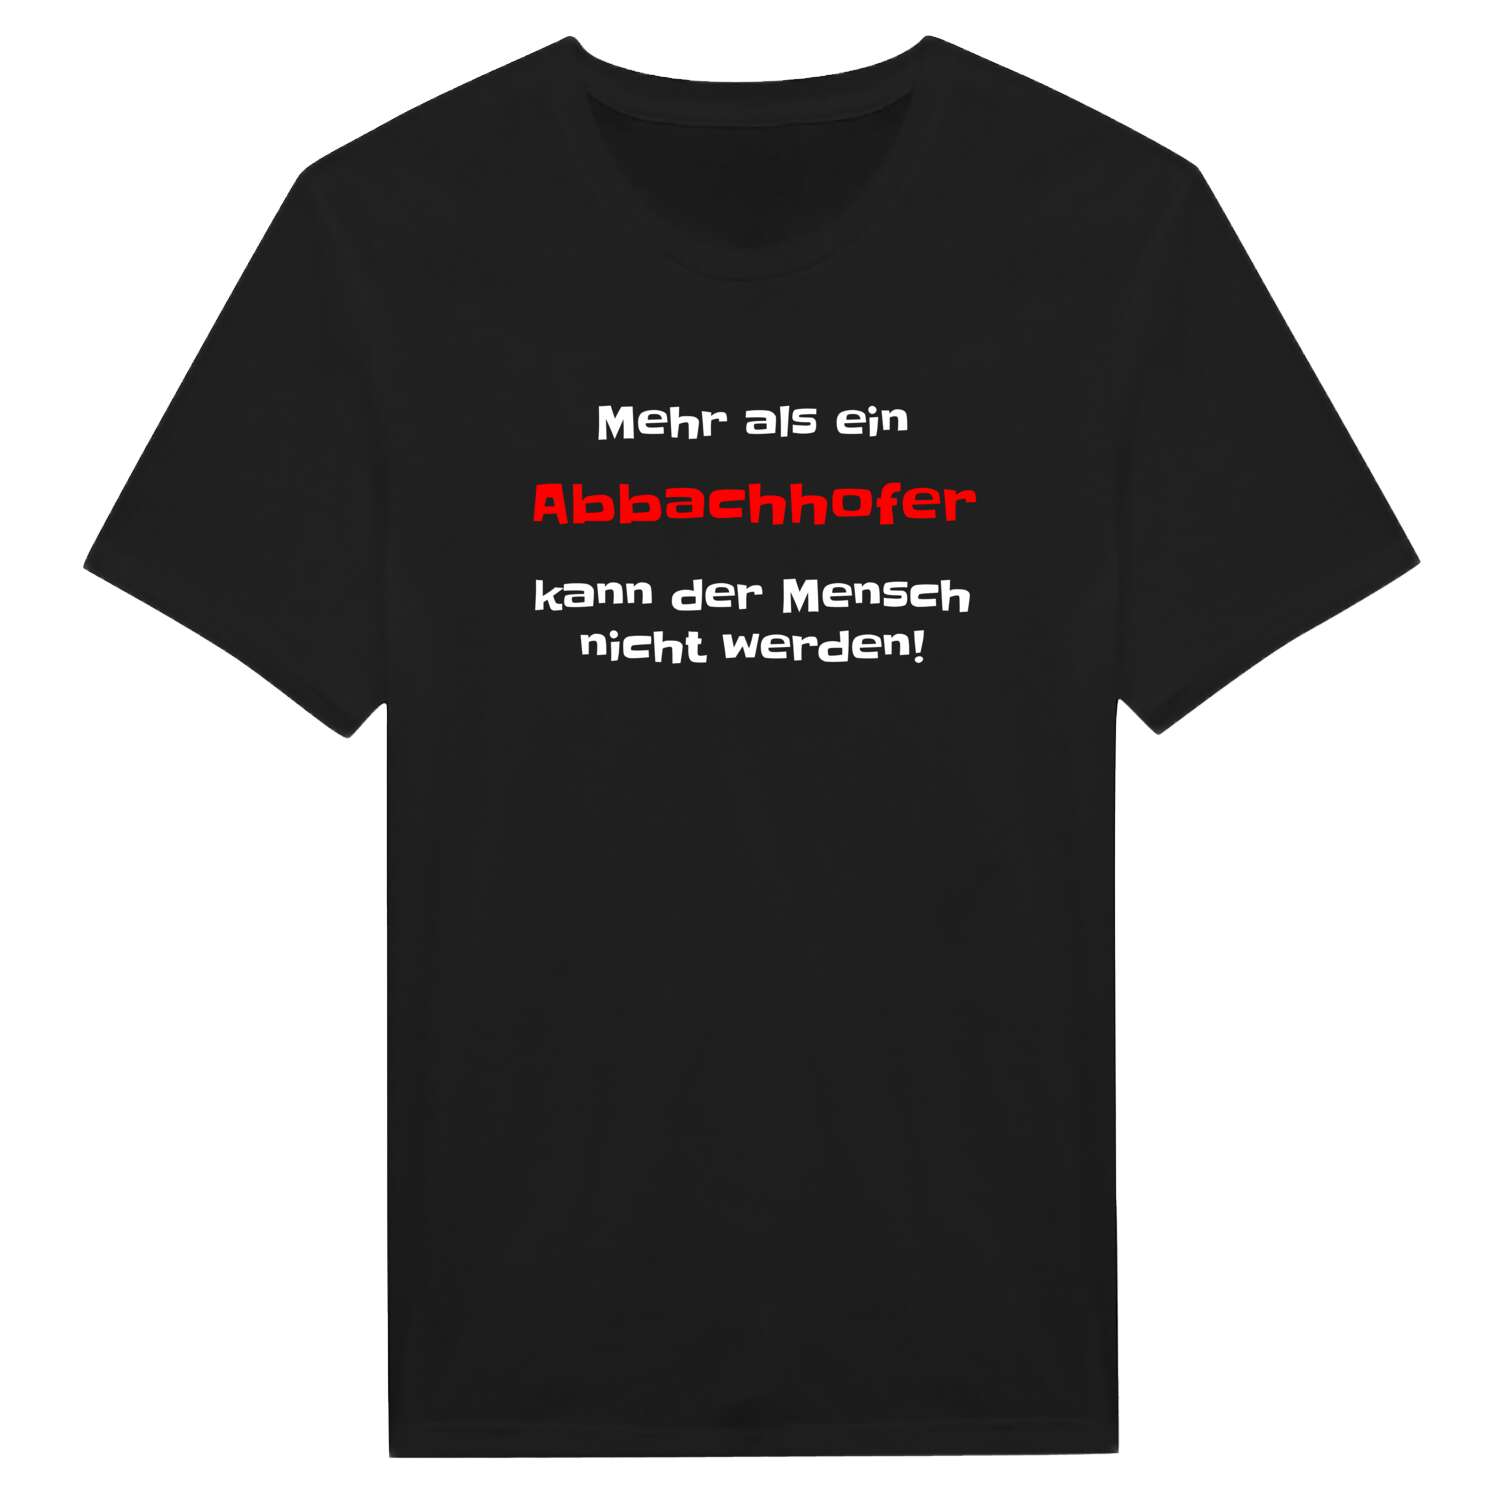 Abbachhof T-Shirt »Mehr als ein«